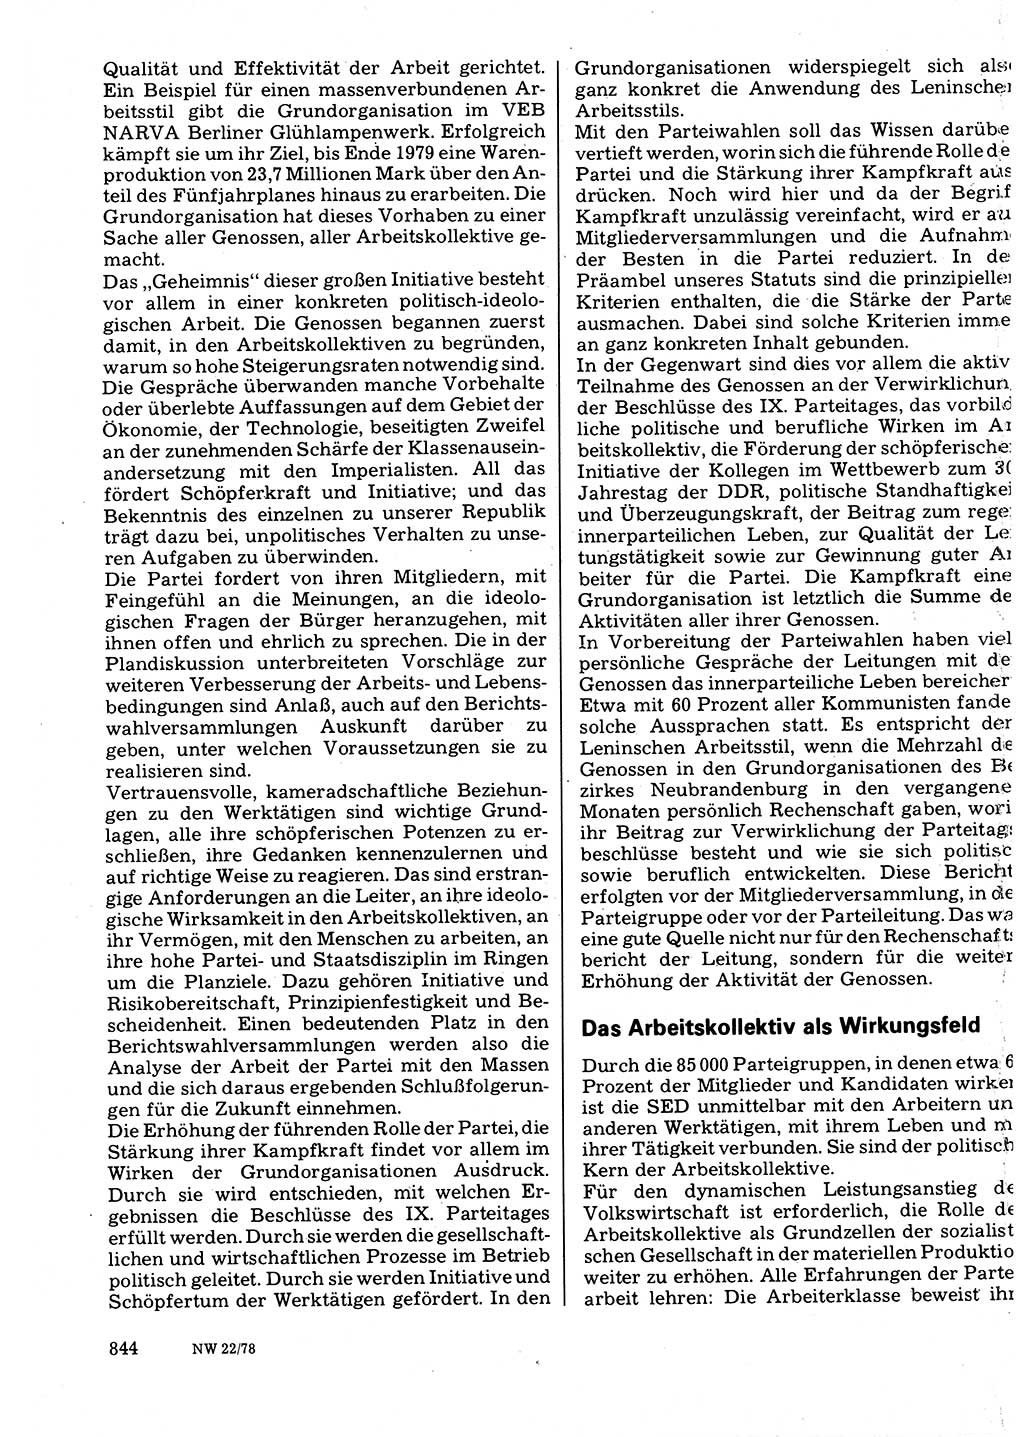 Neuer Weg (NW), Organ des Zentralkomitees (ZK) der SED (Sozialistische Einheitspartei Deutschlands) für Fragen des Parteilebens, 33. Jahrgang [Deutsche Demokratische Republik (DDR)] 1978, Seite 844 (NW ZK SED DDR 1978, S. 844)